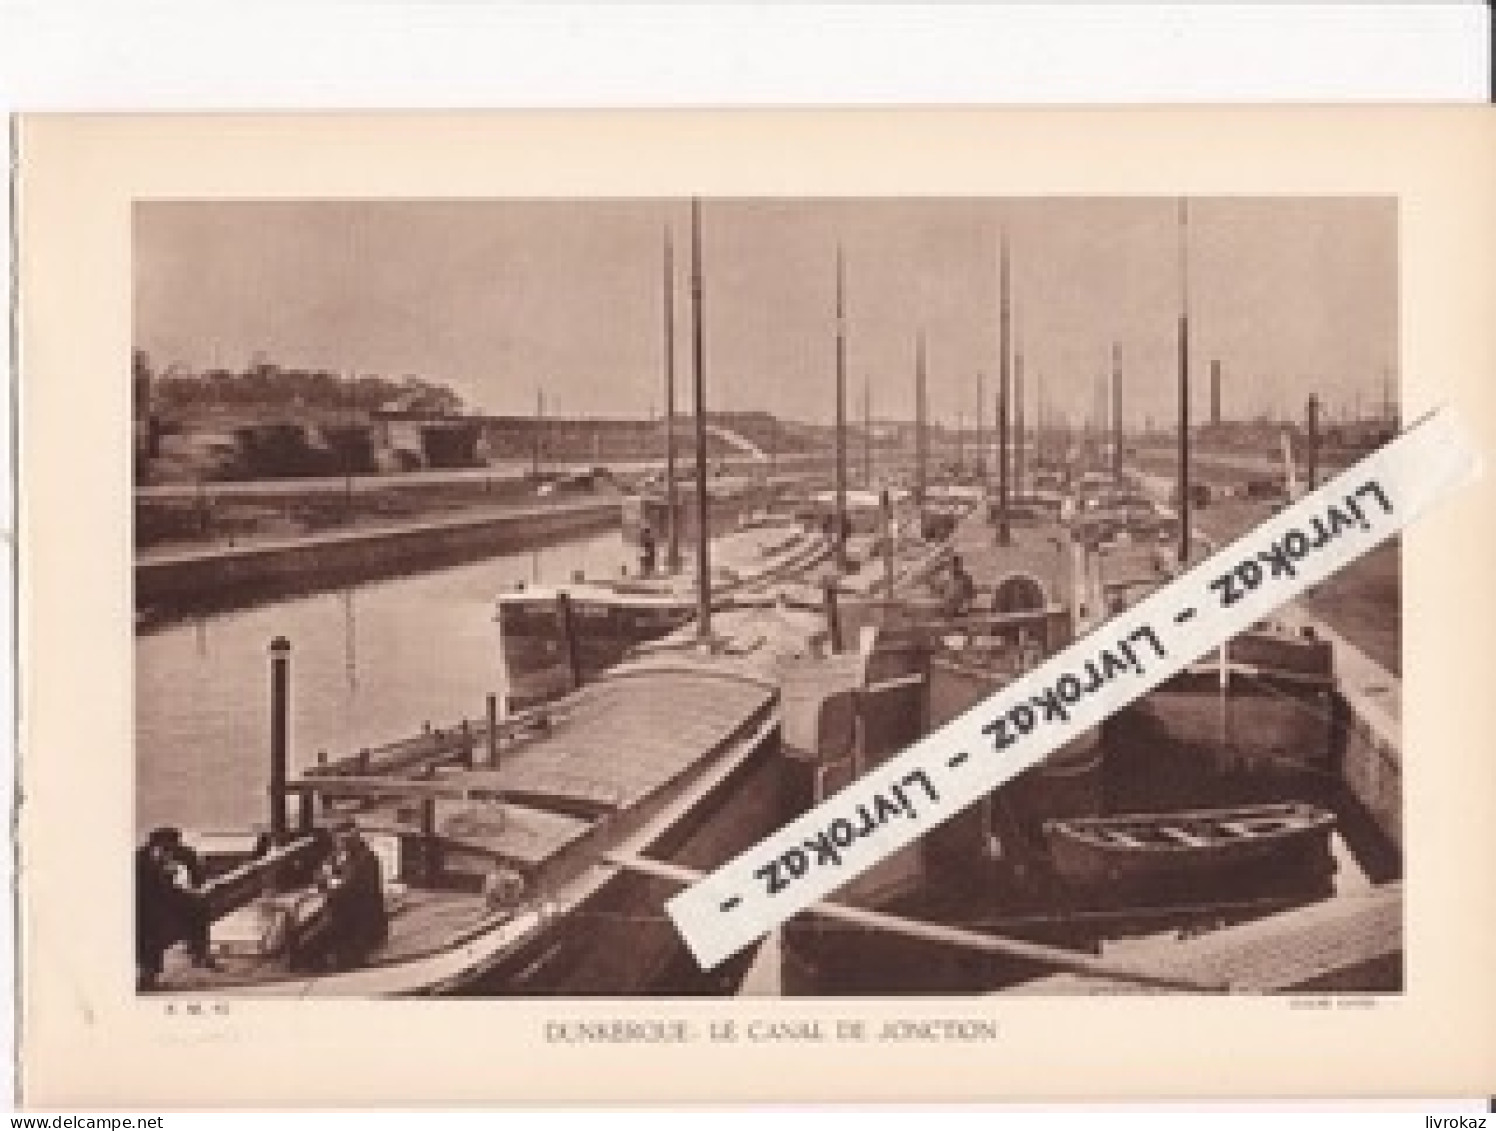 Dunkerque (Nord) Le Canal De Jonction, Péniches, Photo Sépia Extraite D'un Livre Paru En 1933 - Unclassified